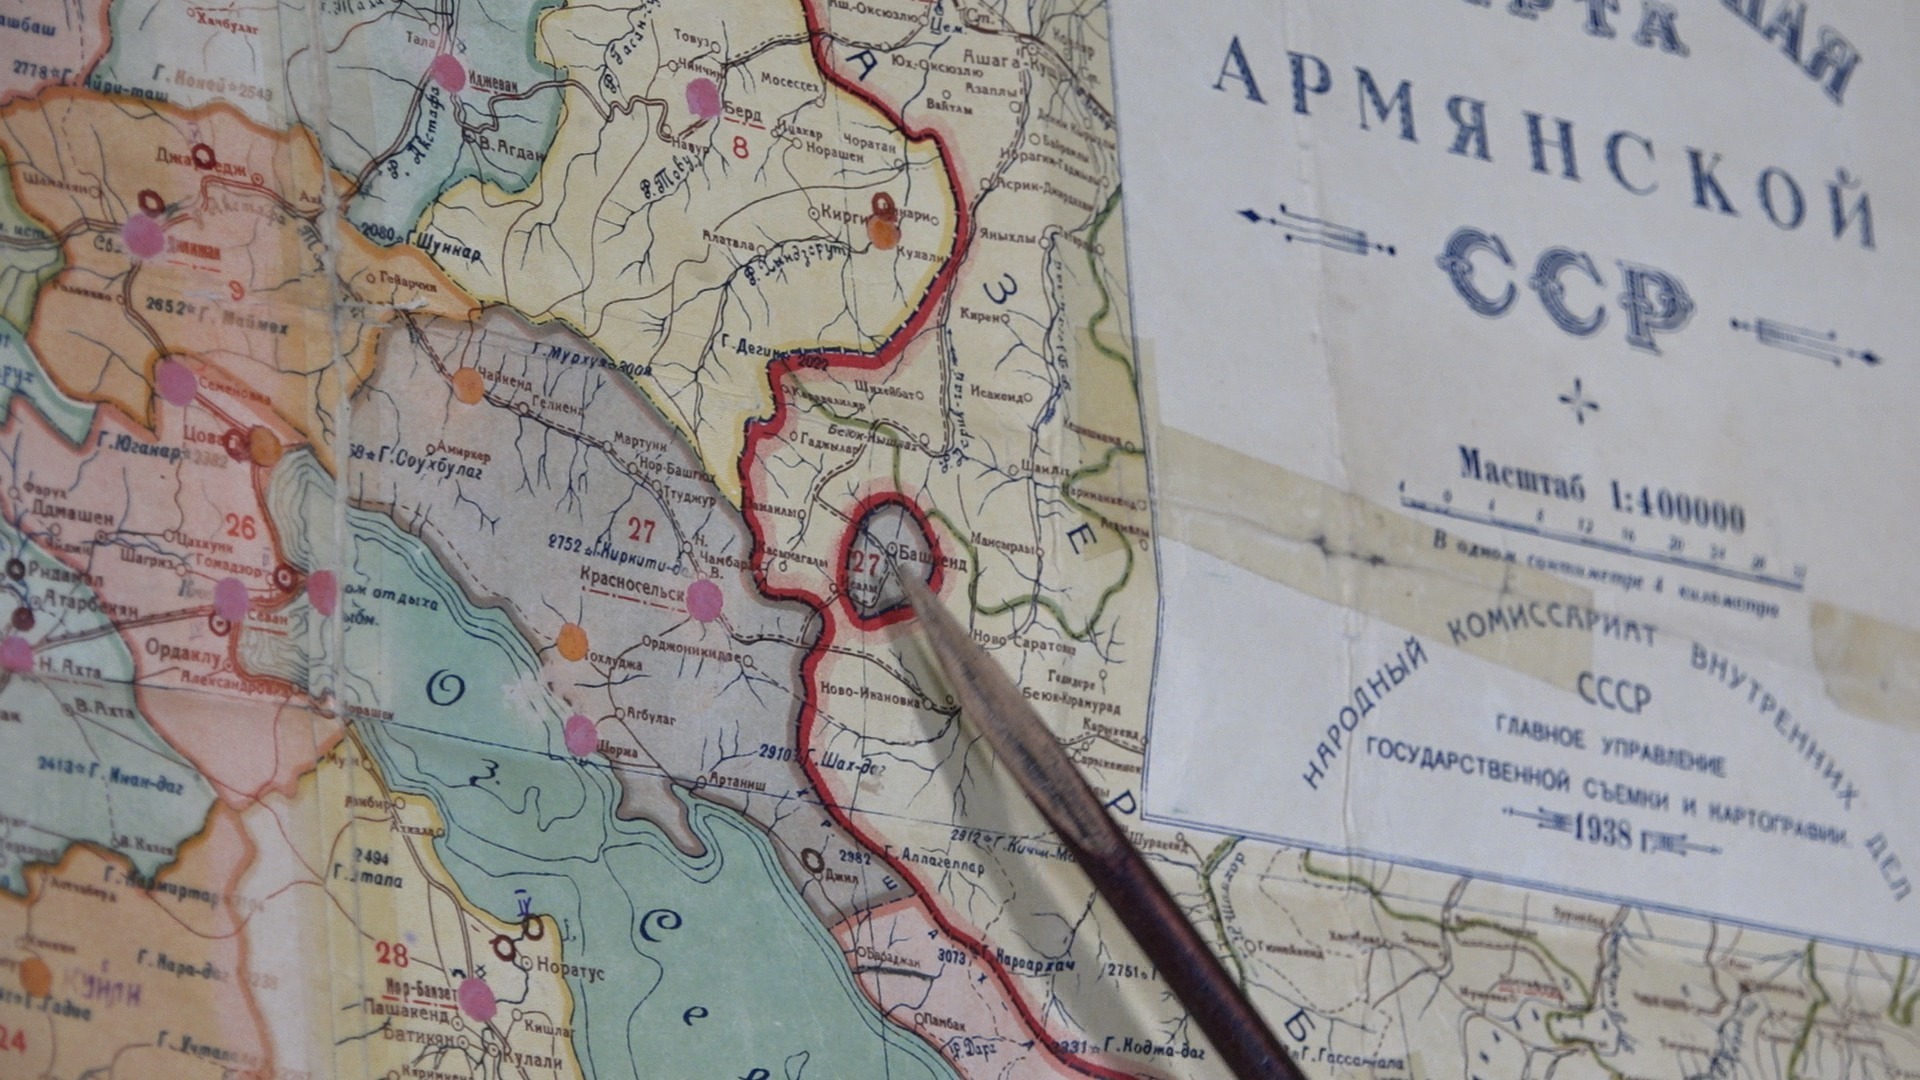 Սահմանազատում, սահմանափոխություններ, անկլավներ․ ի՞նչ են պատմում խորհրդային քարտեզները